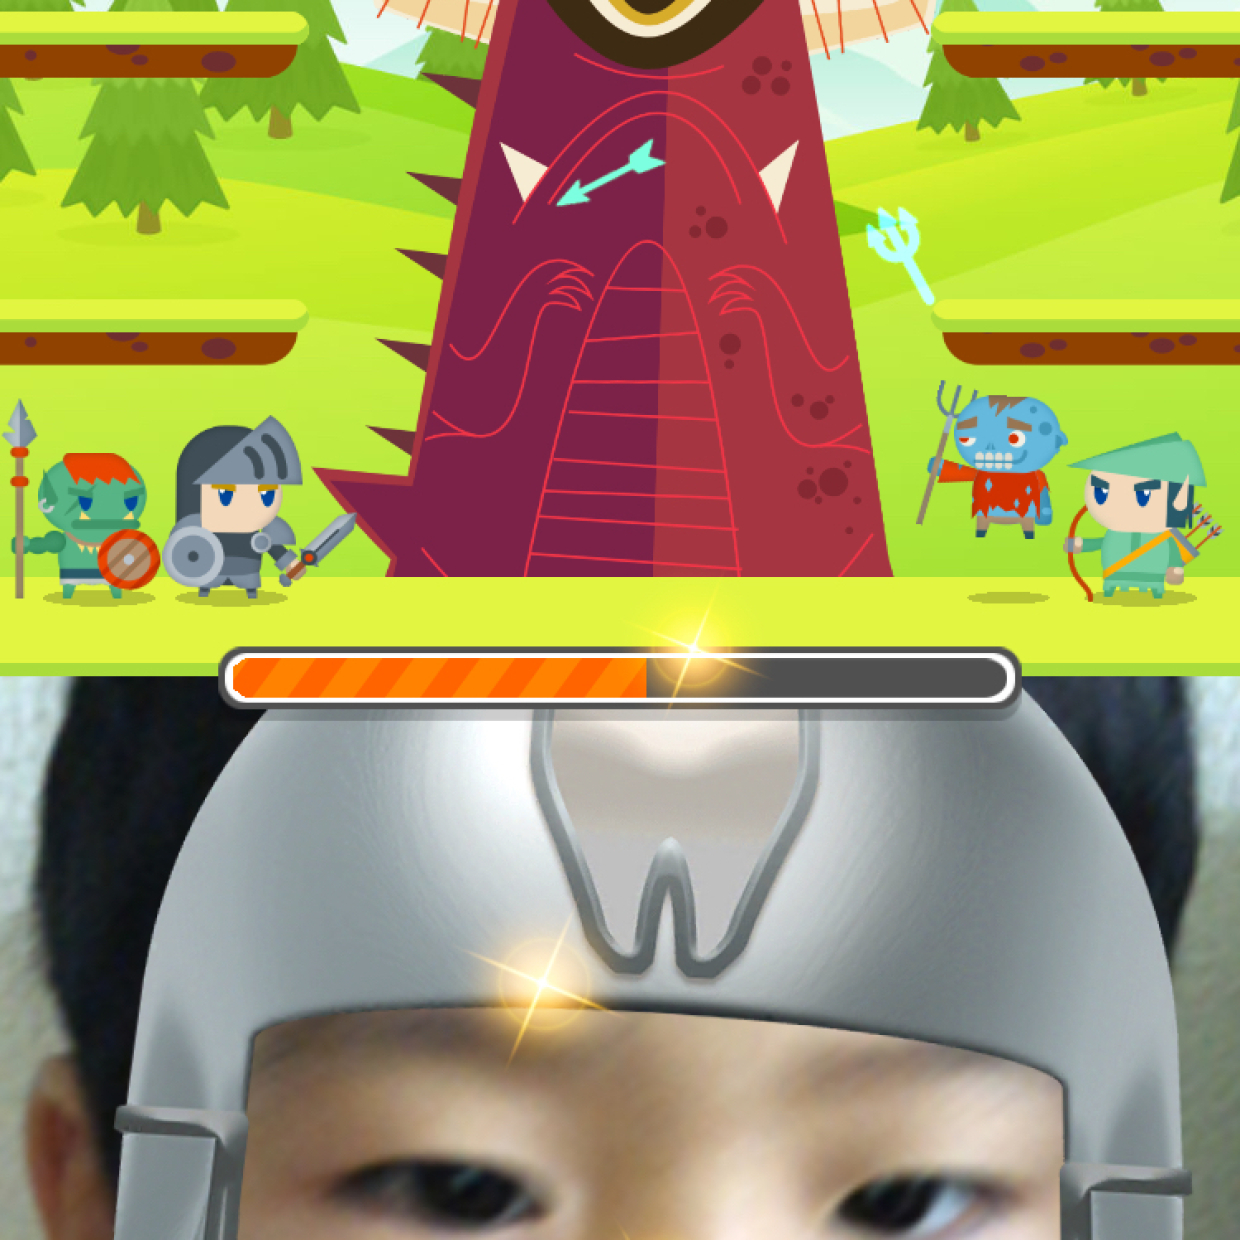  話題のアプリ【ハミガキ勇者】をハミガキ嫌いの子どもに使ってみたところ…！？ 